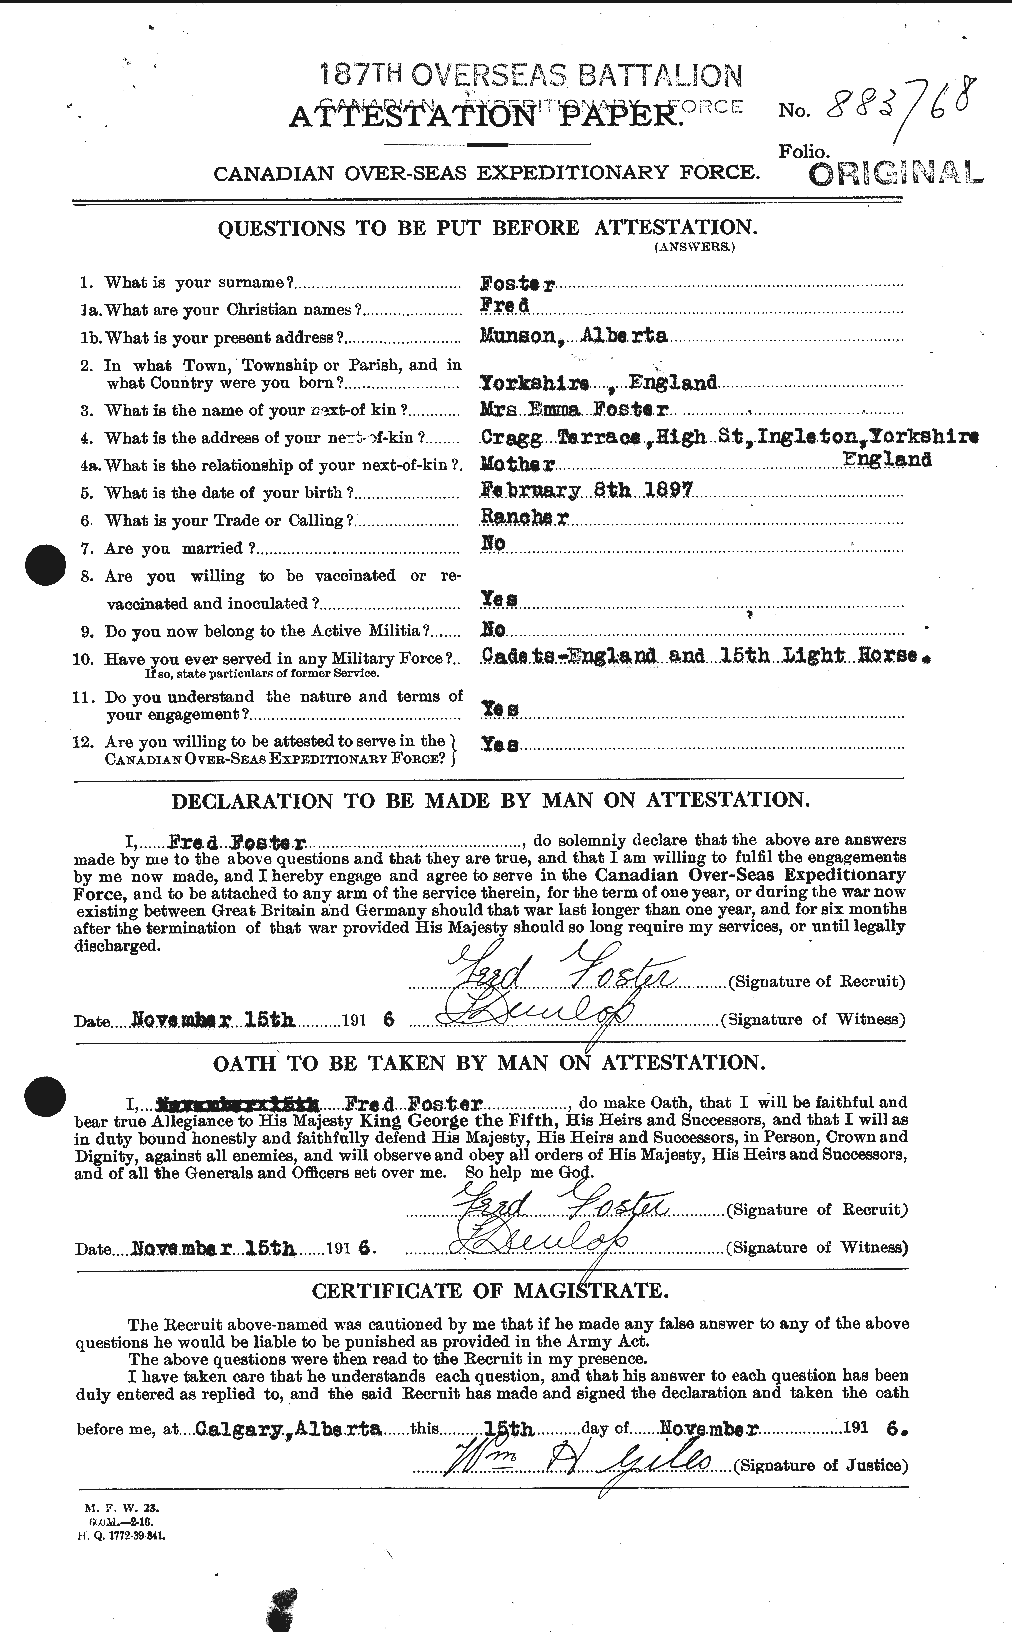 Dossiers du Personnel de la Première Guerre mondiale - CEC 330633a